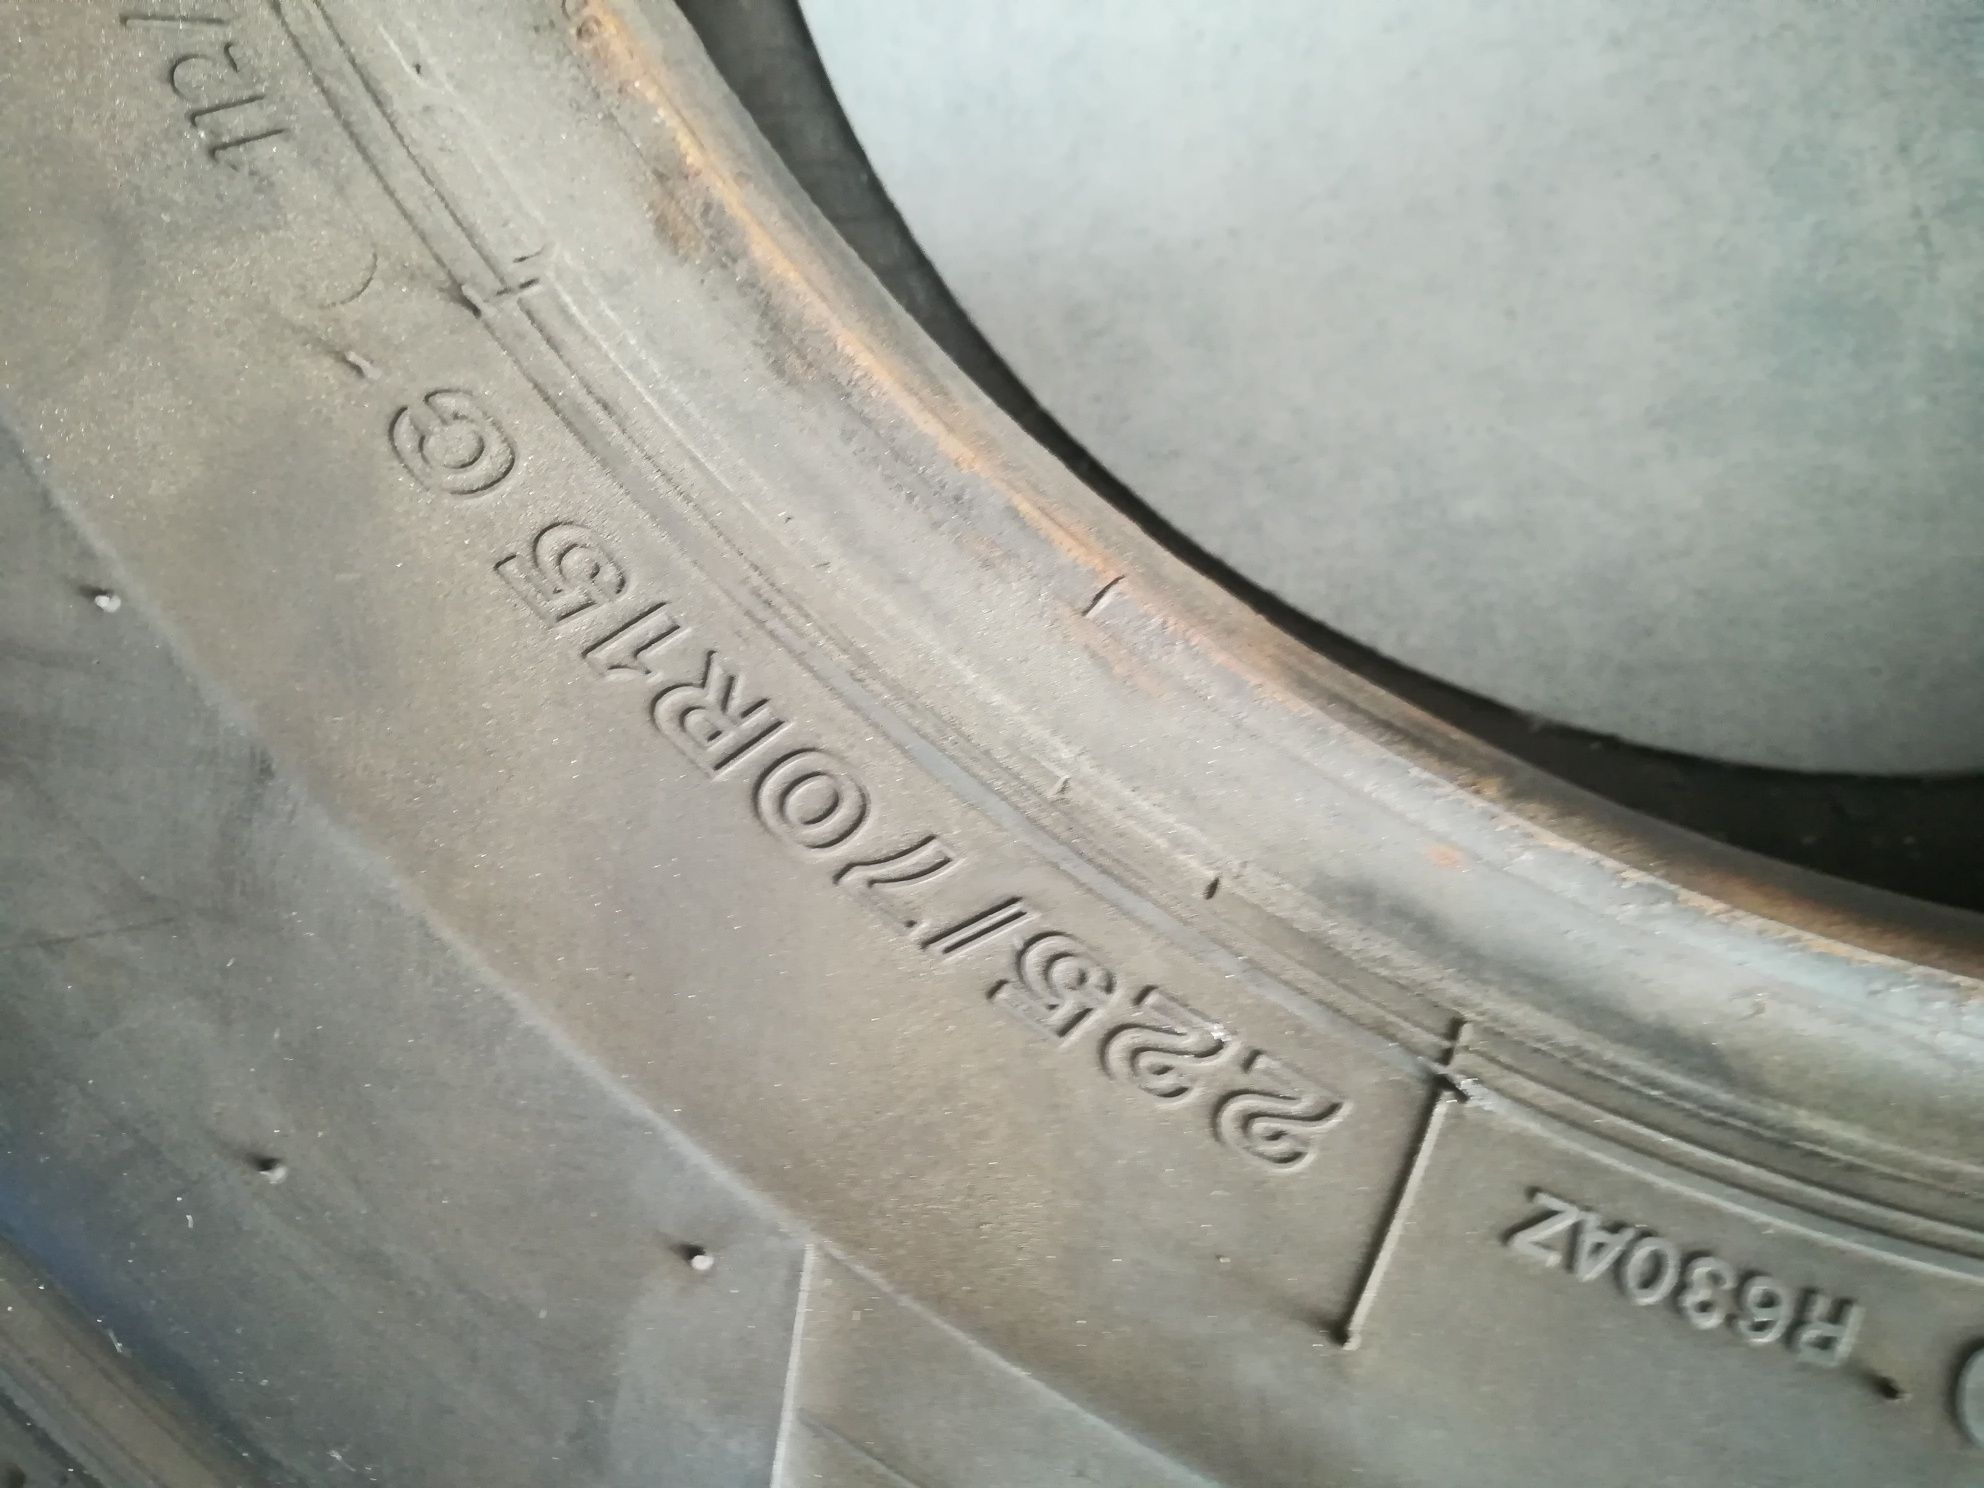 4 pneus 225 70 r15C Bridgestone